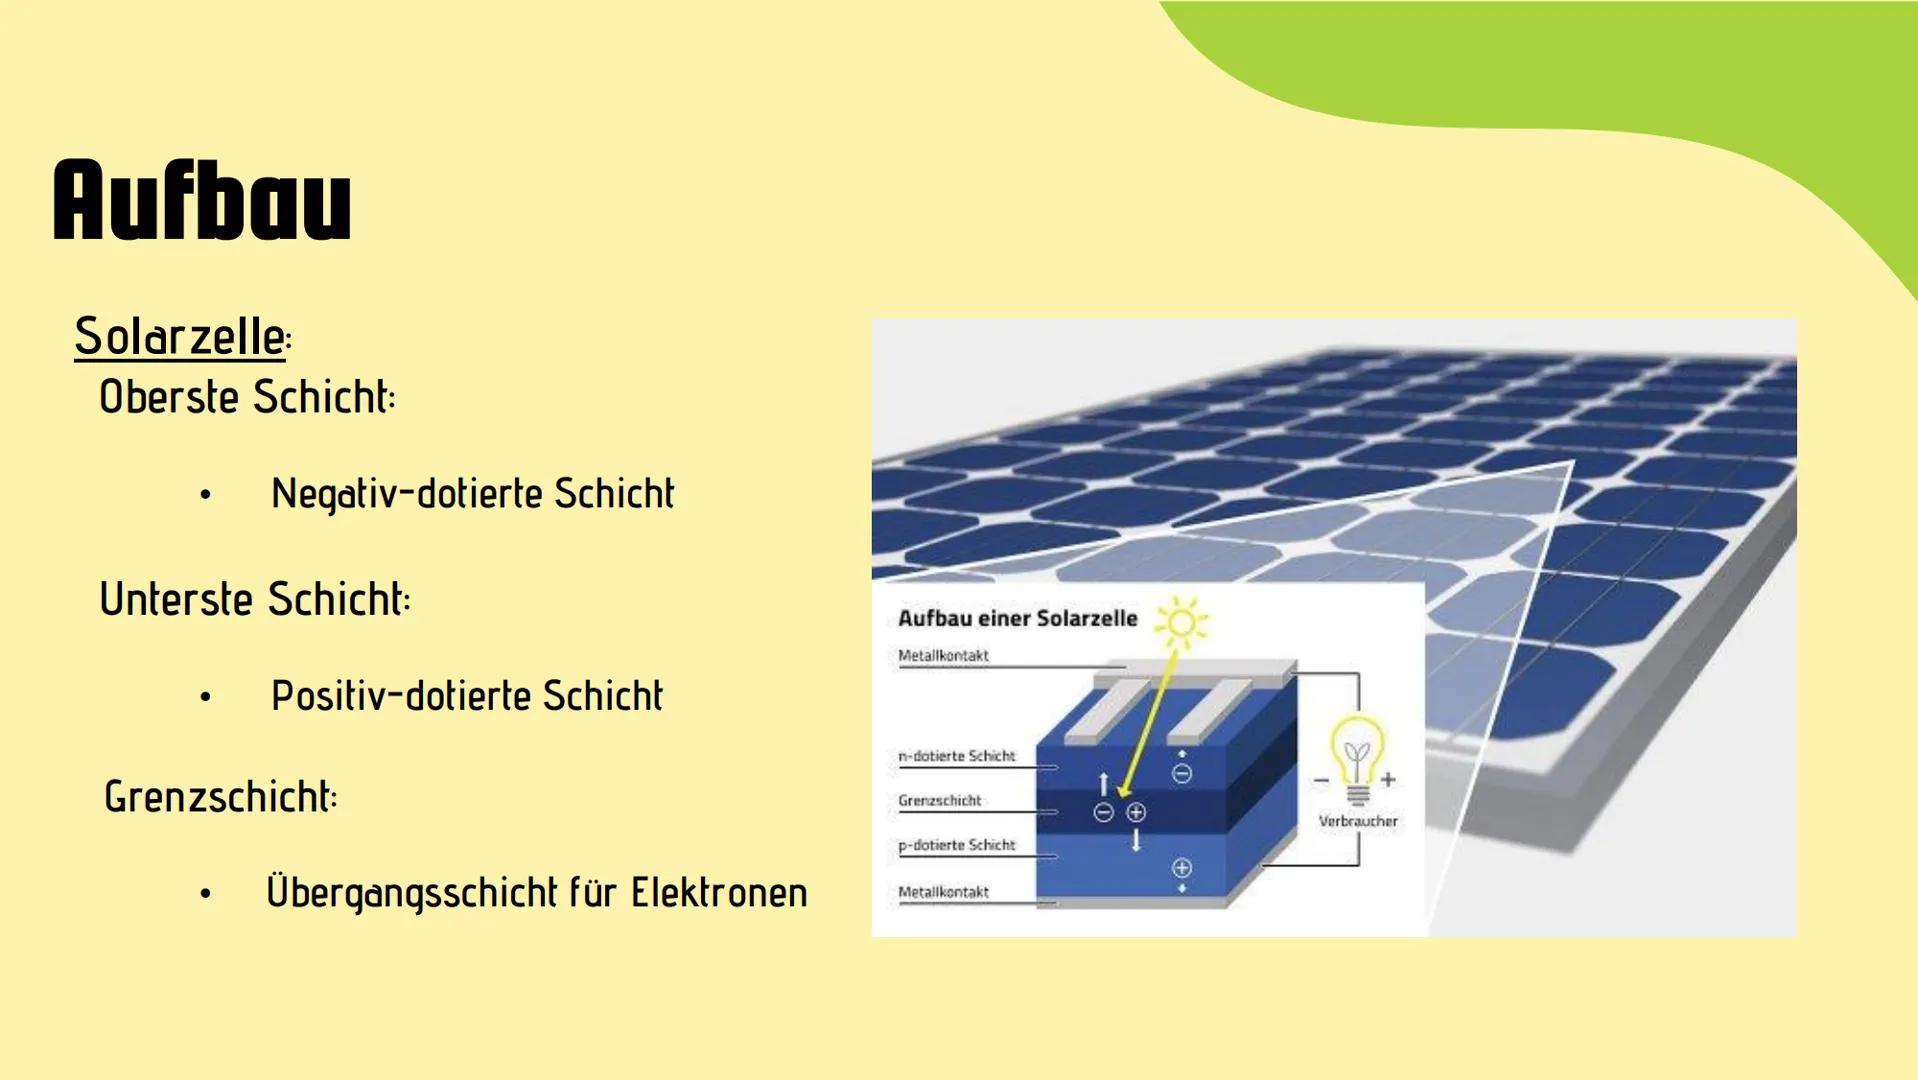 Solarkraftwerke
Sophie, Lars und Iva G10b Solarkraftwerke
Sophie, Lars und Iva Glob
Eine der umweltfreundlichsten Möglichkeiten zur Gewinnun